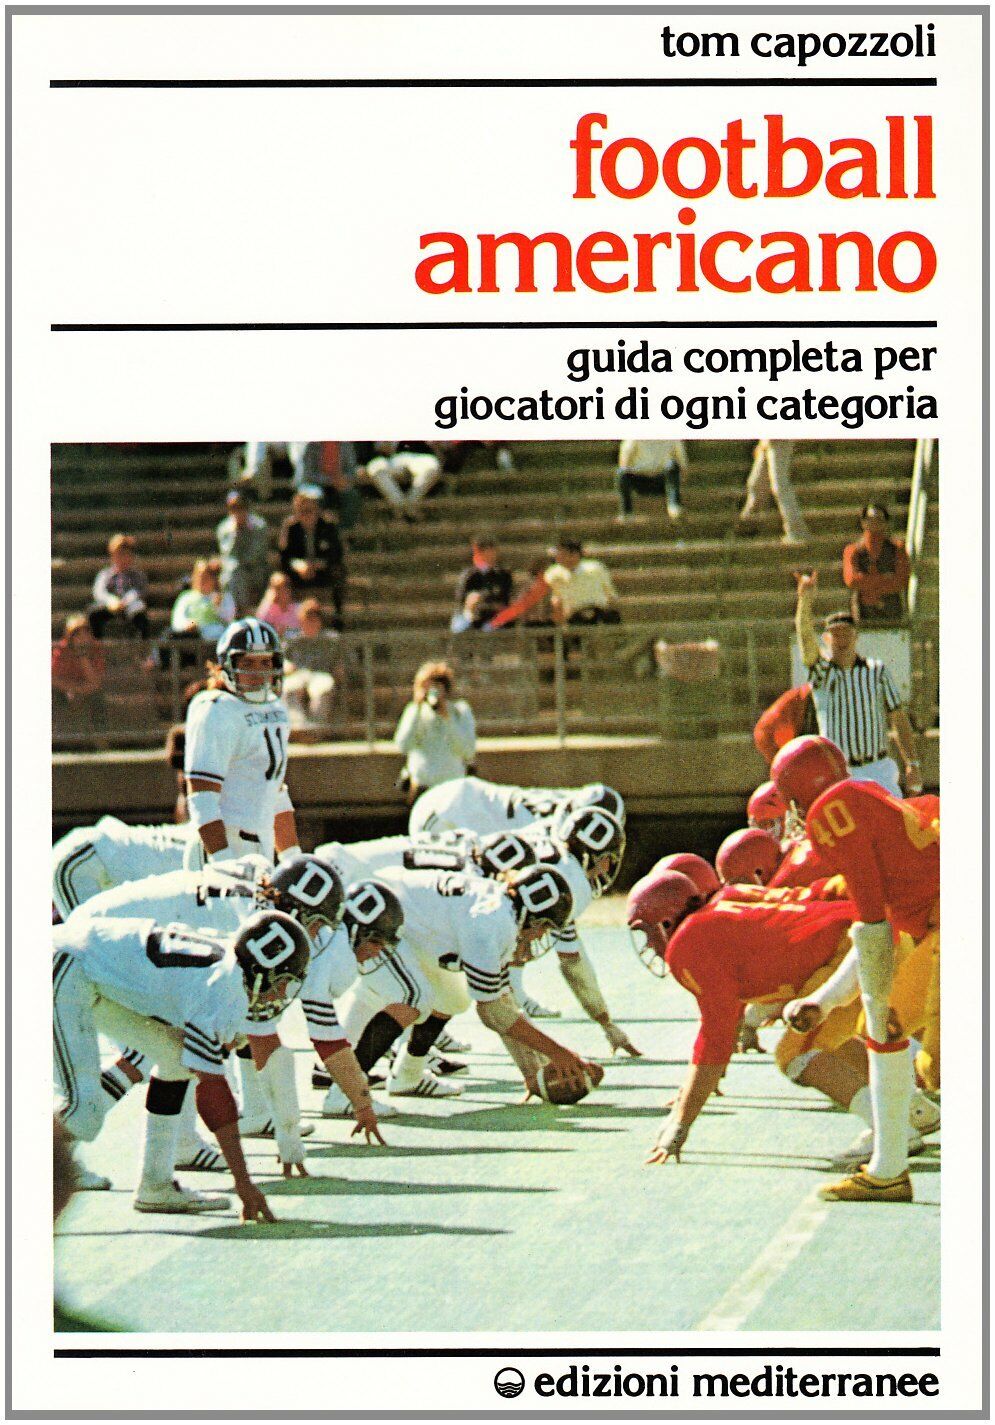 Football americano - Tom Capozzoli - Edizioni Mediterranee, 1986 libro usato